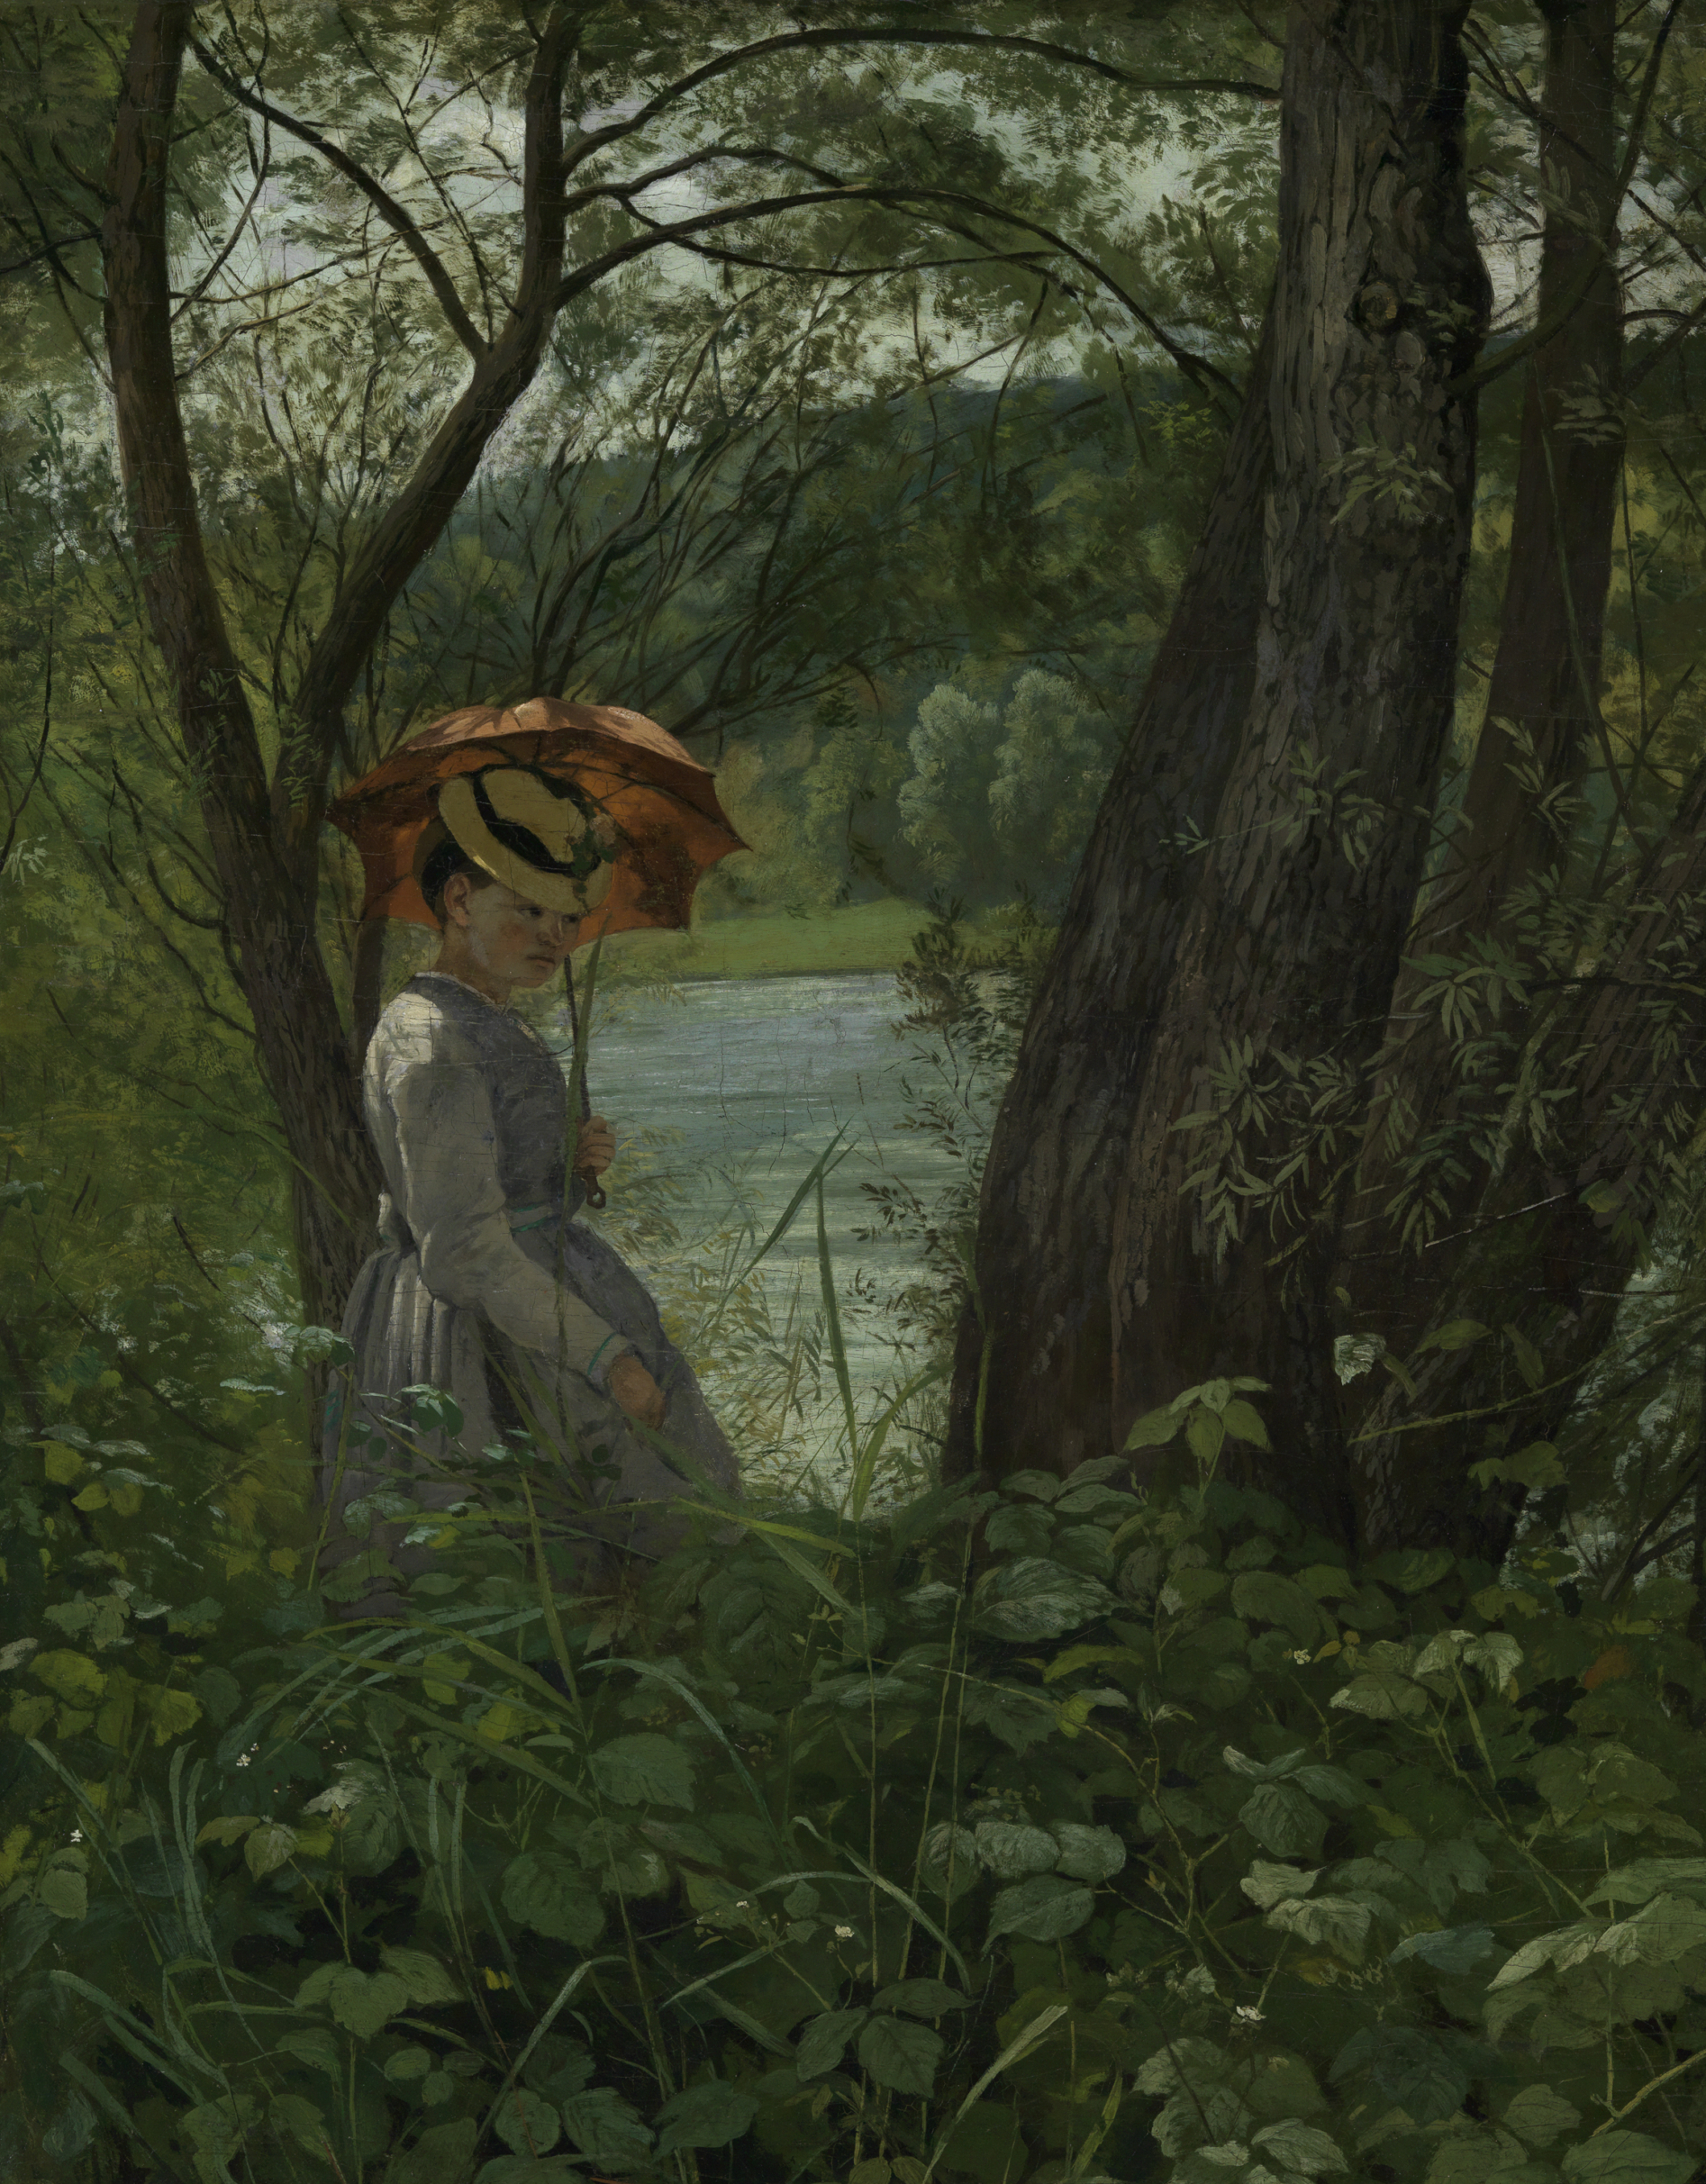 Abbildung des Gemäldes "Im Sonnenschein". Man sieht eine junge Frau mit einem Sonnenschirm, umgeben von Wald. Im Hintergrund ist ein See zu erkennen.